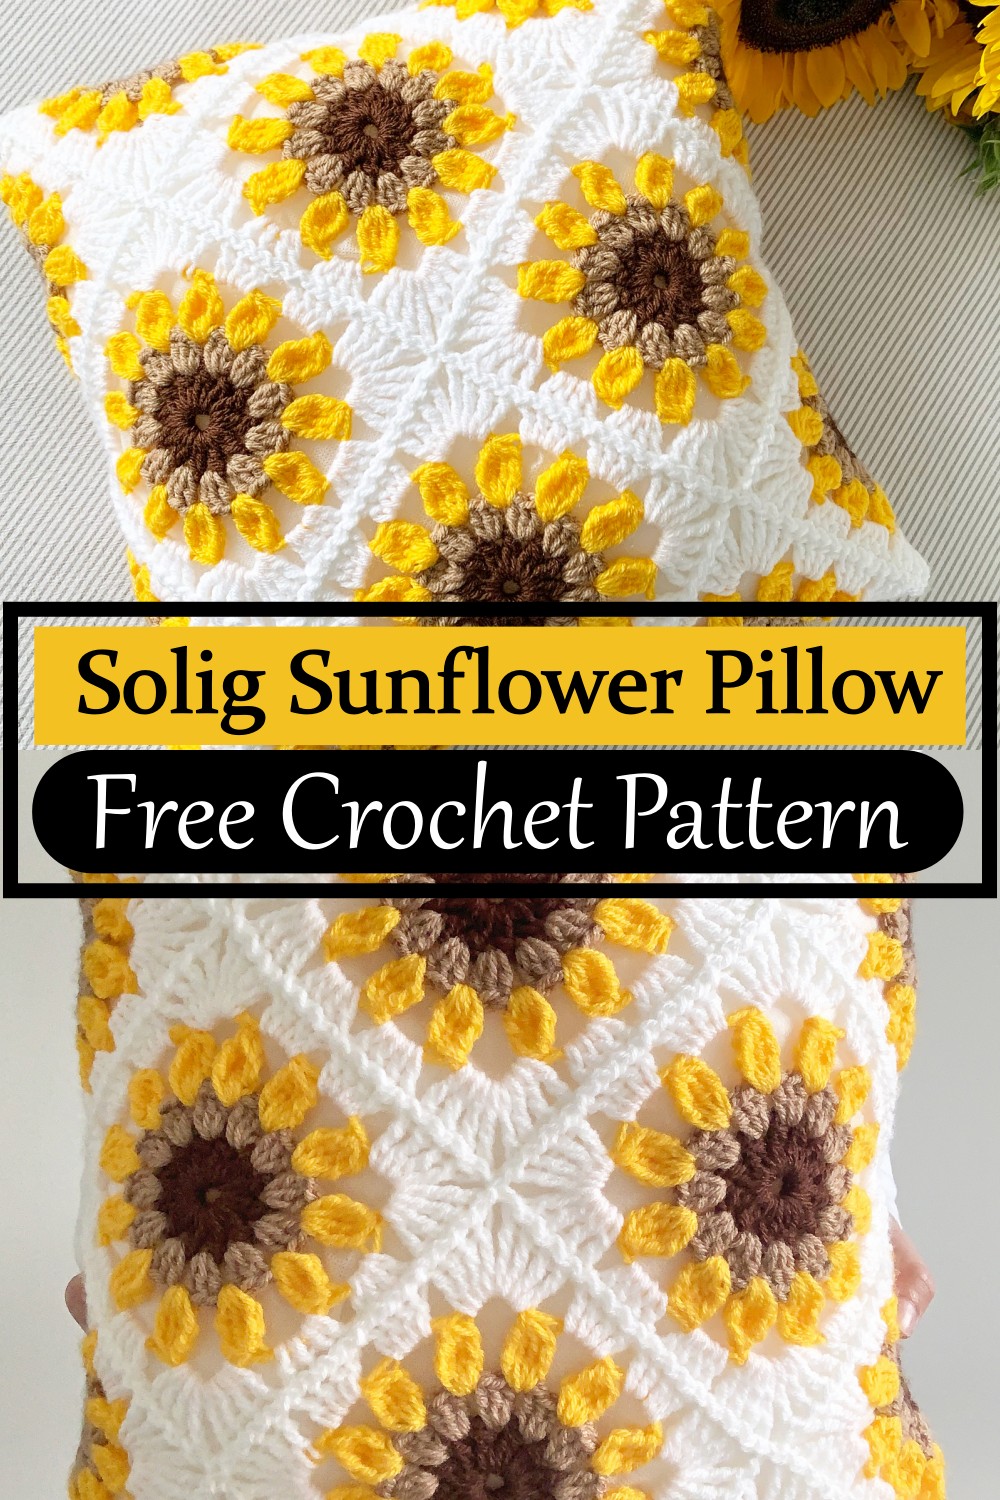 Solig Sunflower Pillow